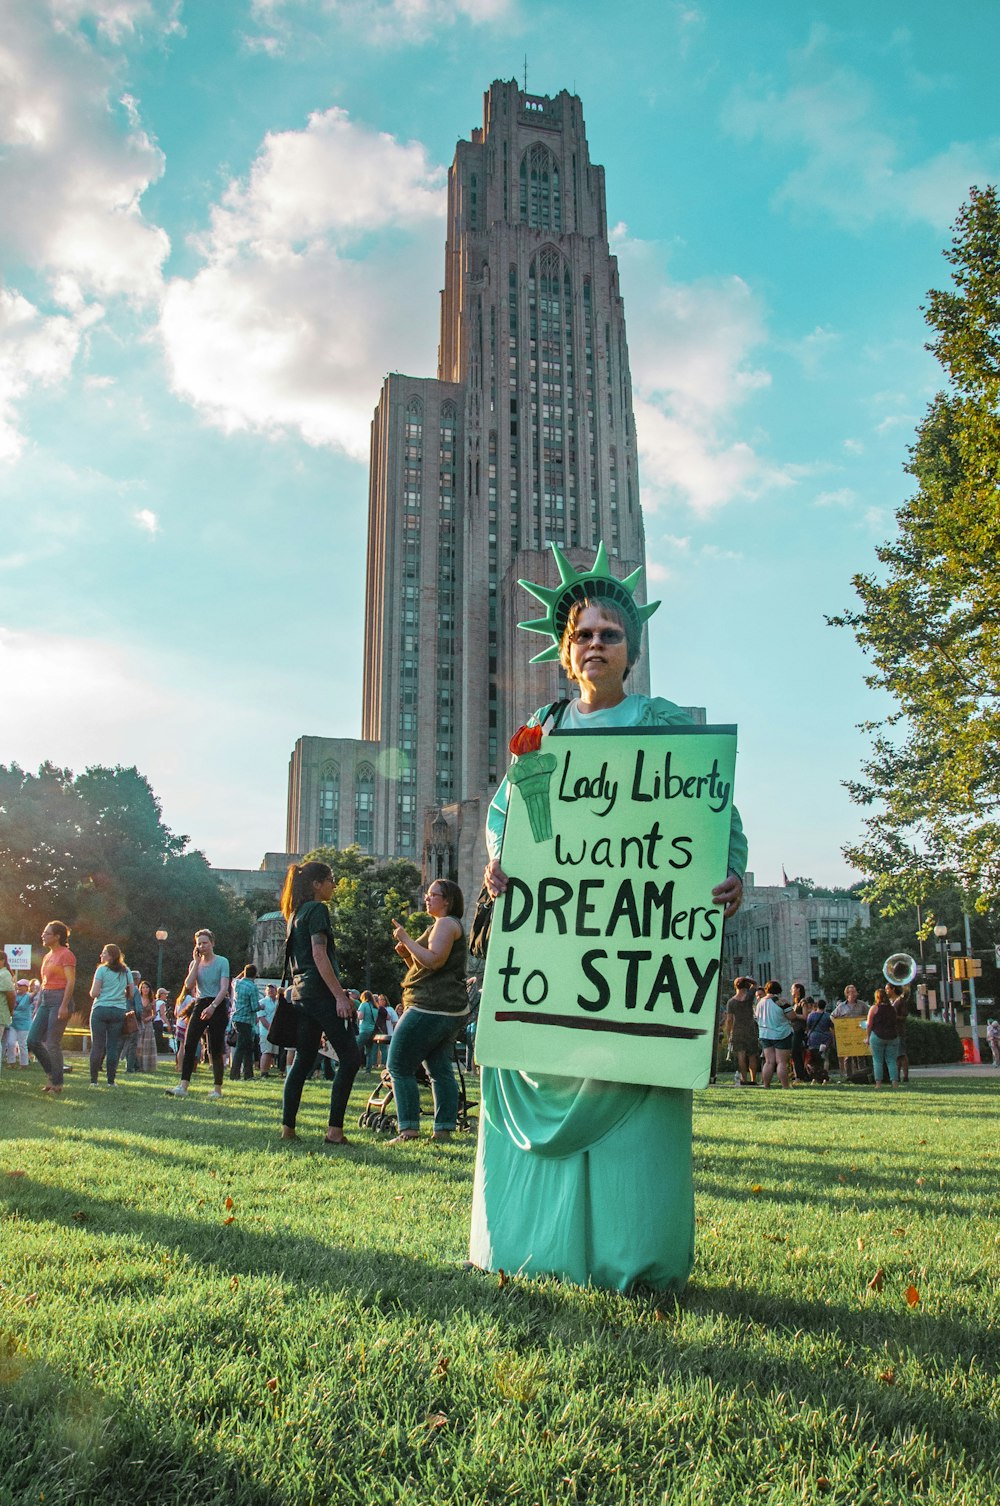 l’homme tenant Lady Liberty veut que les rêveurs restent signalétique